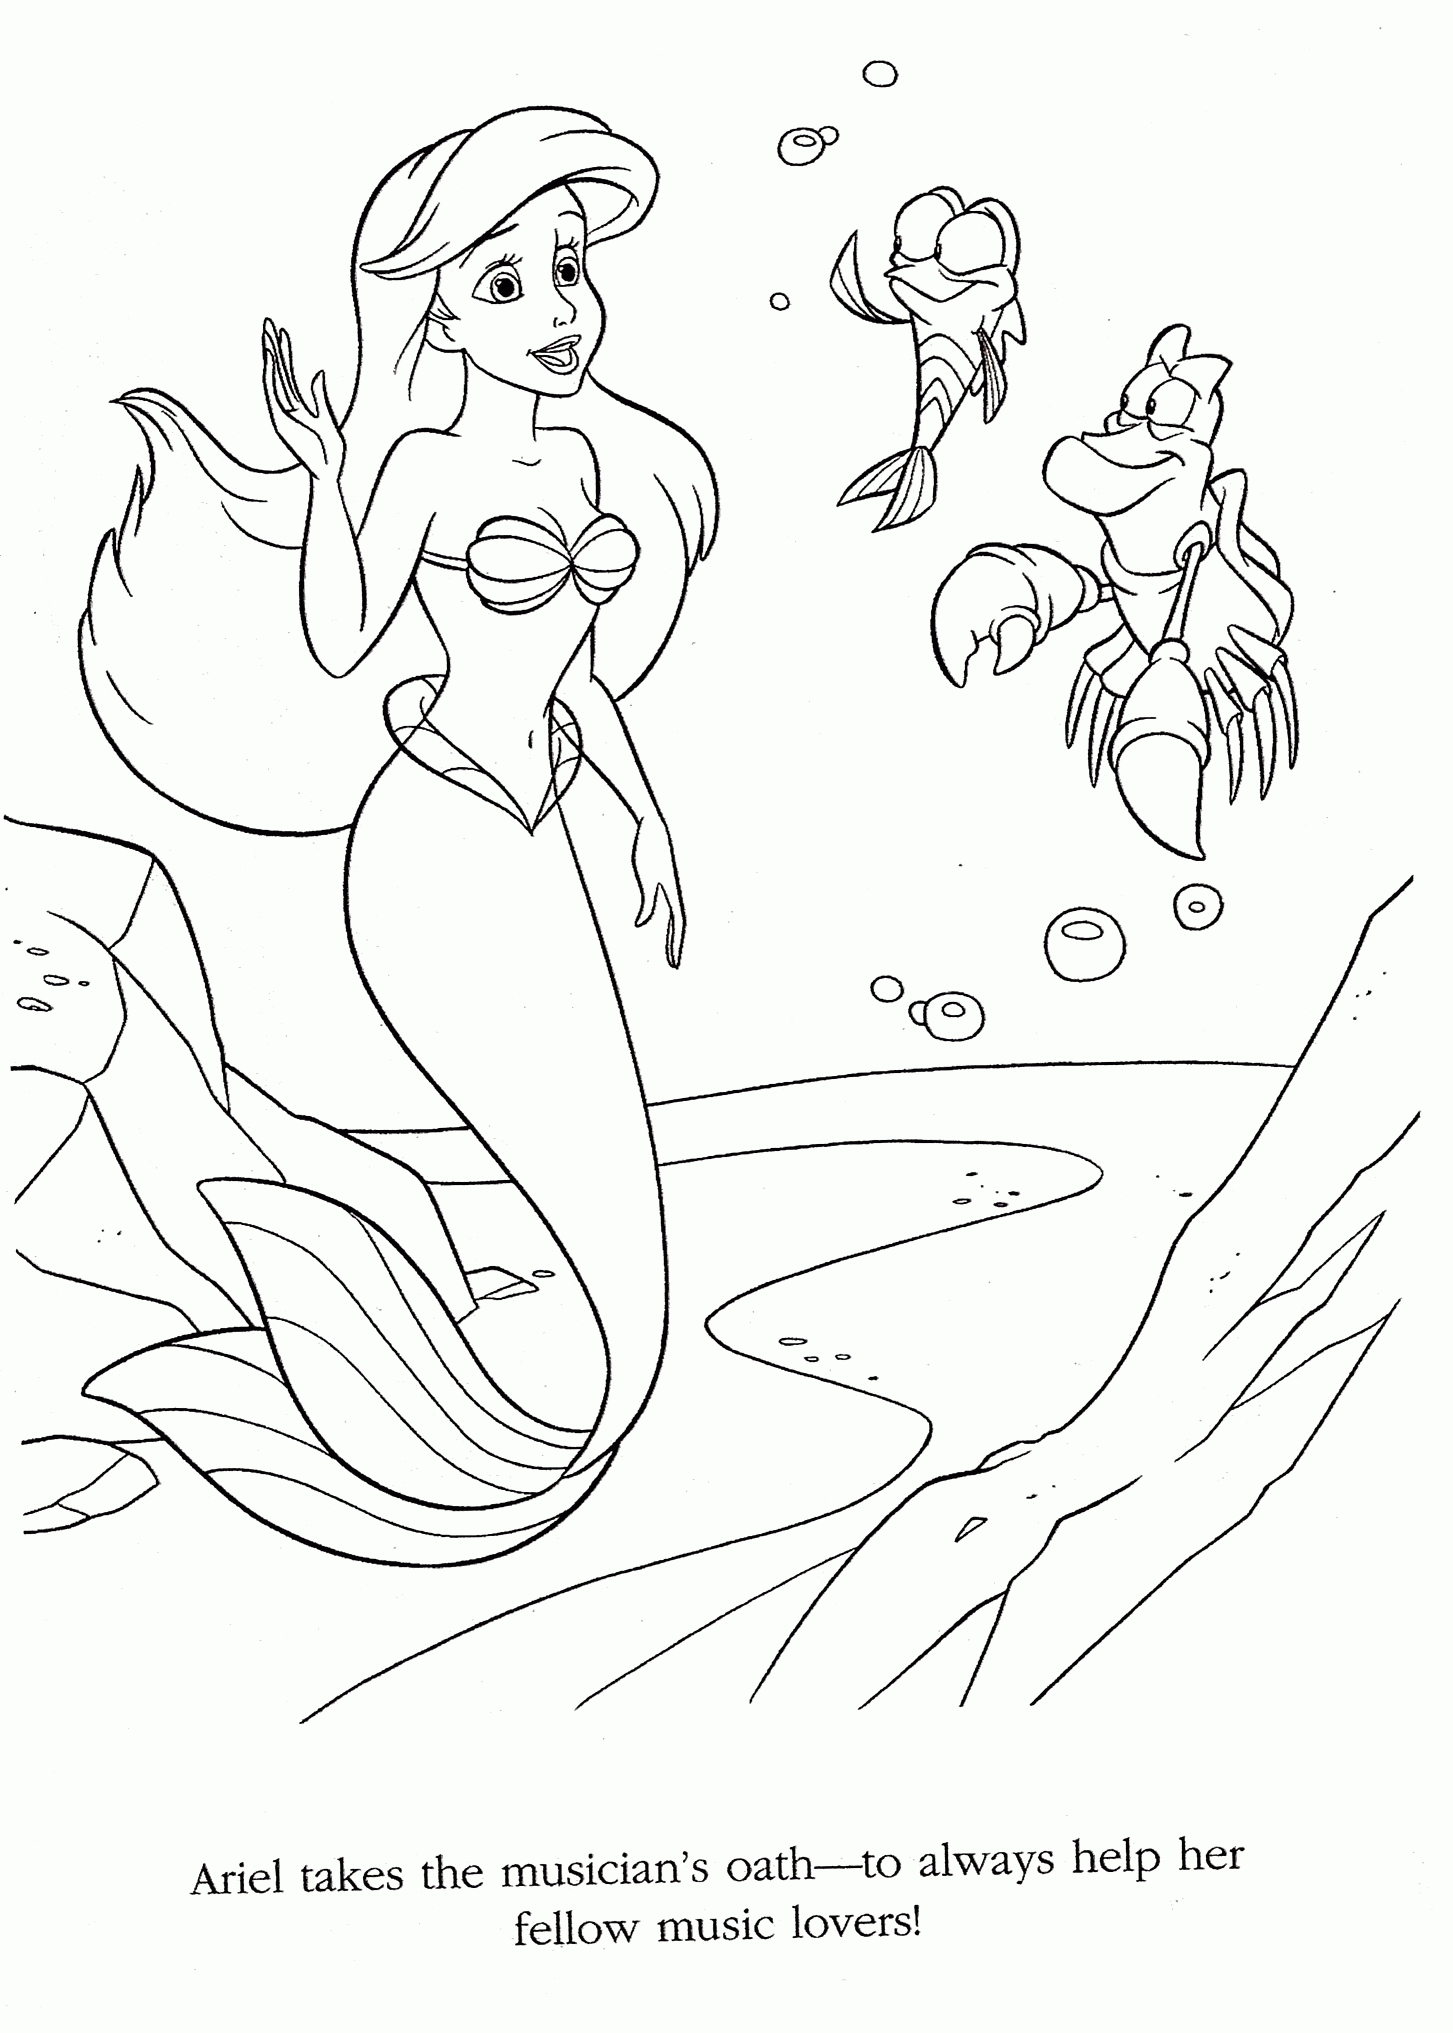 Kolorowanka syrenka Ariel żegna się z krabem i rybką machając ręką